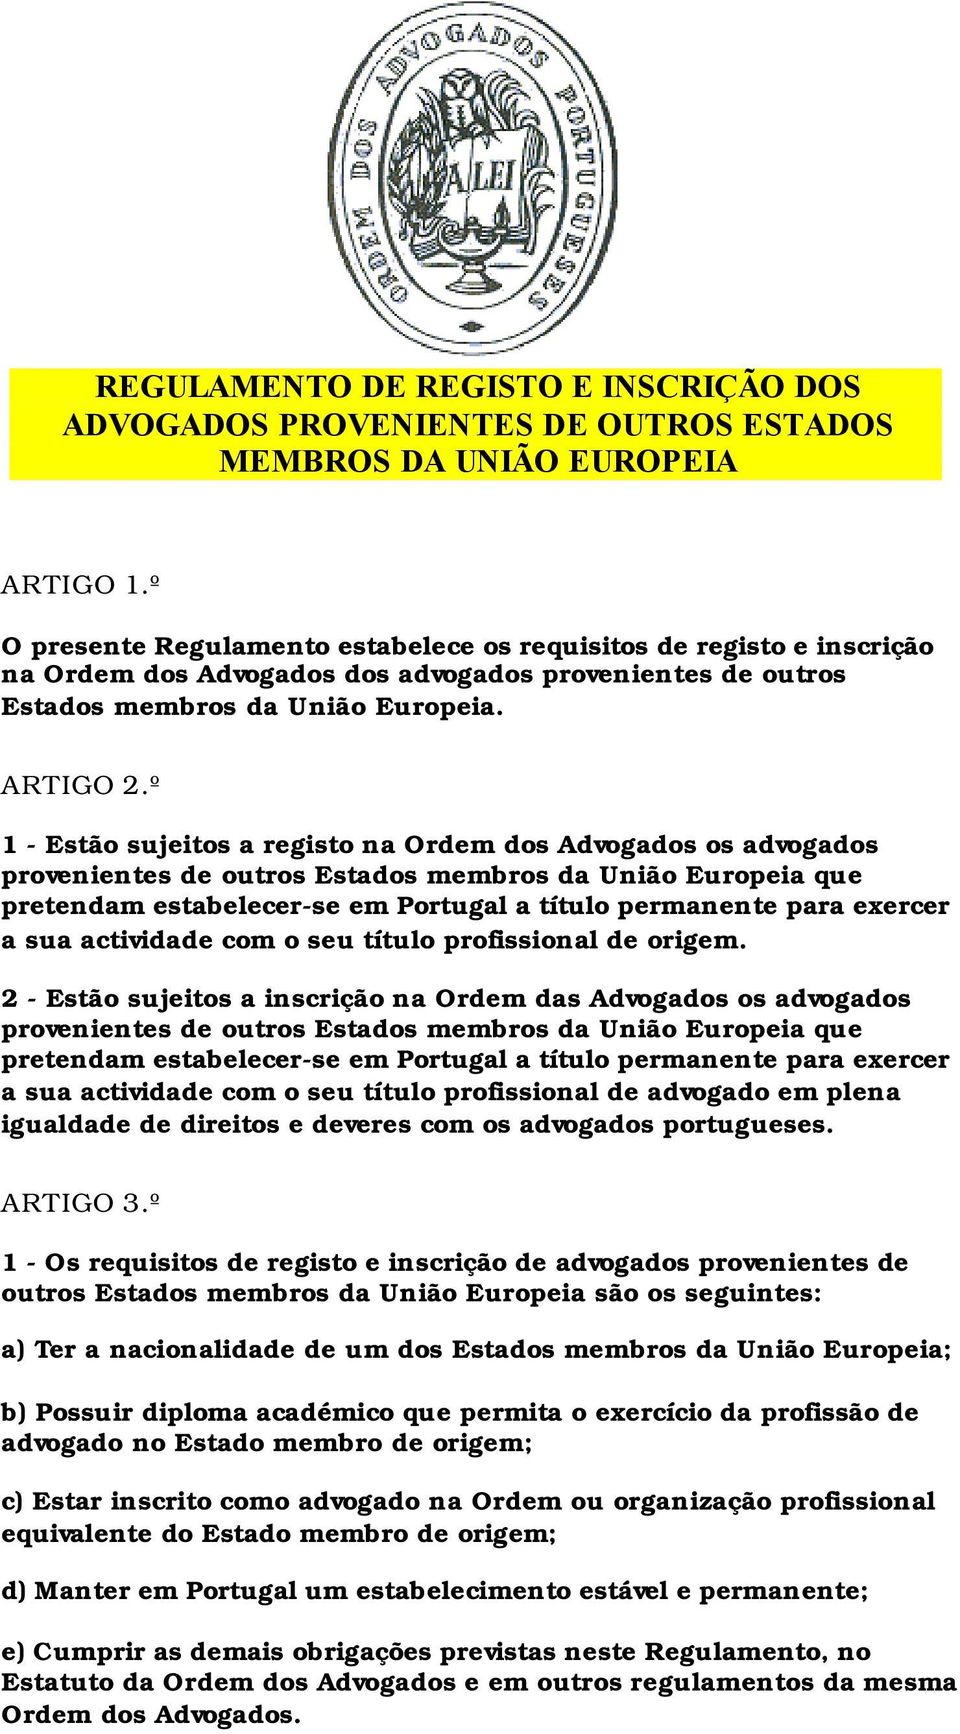 º 1 - Estão sujeitos a registo na Ordem dos Advogados os advogados provenientes de outros Estados membros da União Europeia que pretendam estabelecer-se em Portugal a título permanente para exercer a